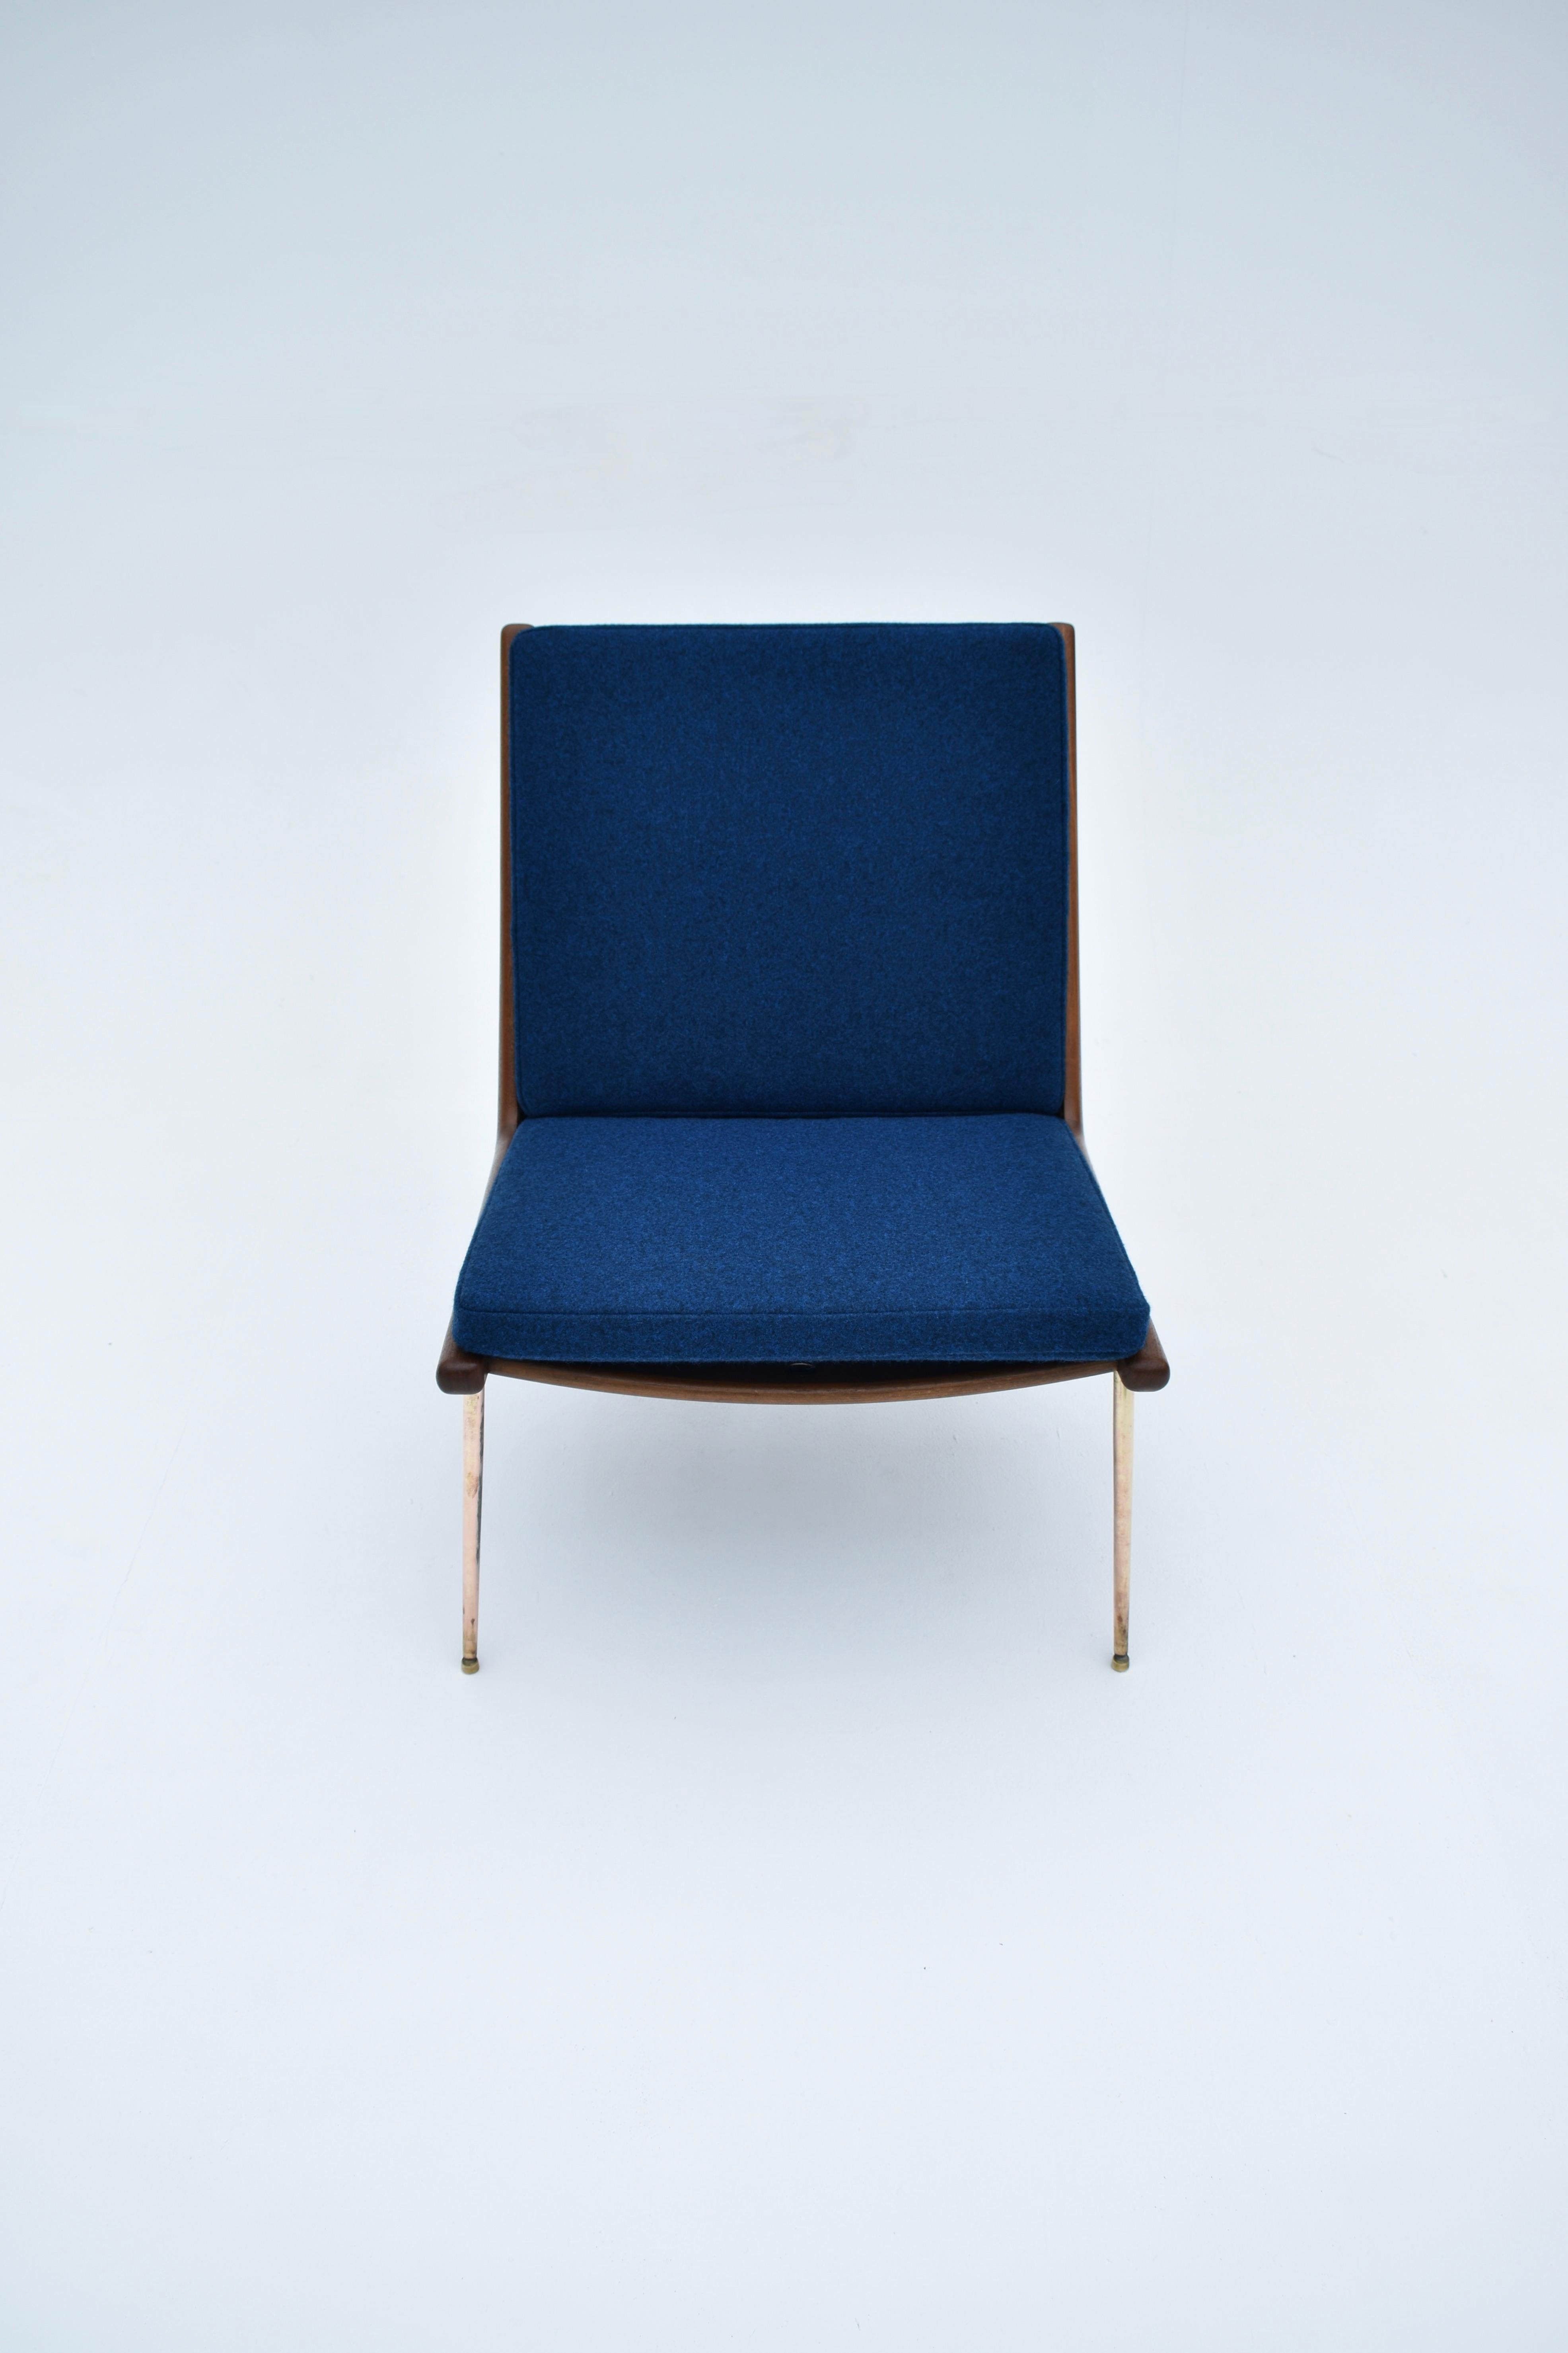 Der 1954 von den Architekten Peter Hvidt & Orla Molgaard Nielsen entworfene Boomerang-Stuhl ist einer der elegantesten Stuhldesigns der Mid-Century-Zeit.

Der wunderschön gefertigte Rahmen steht auf schlanken, vermessingten Beinen, die ein wunderbar